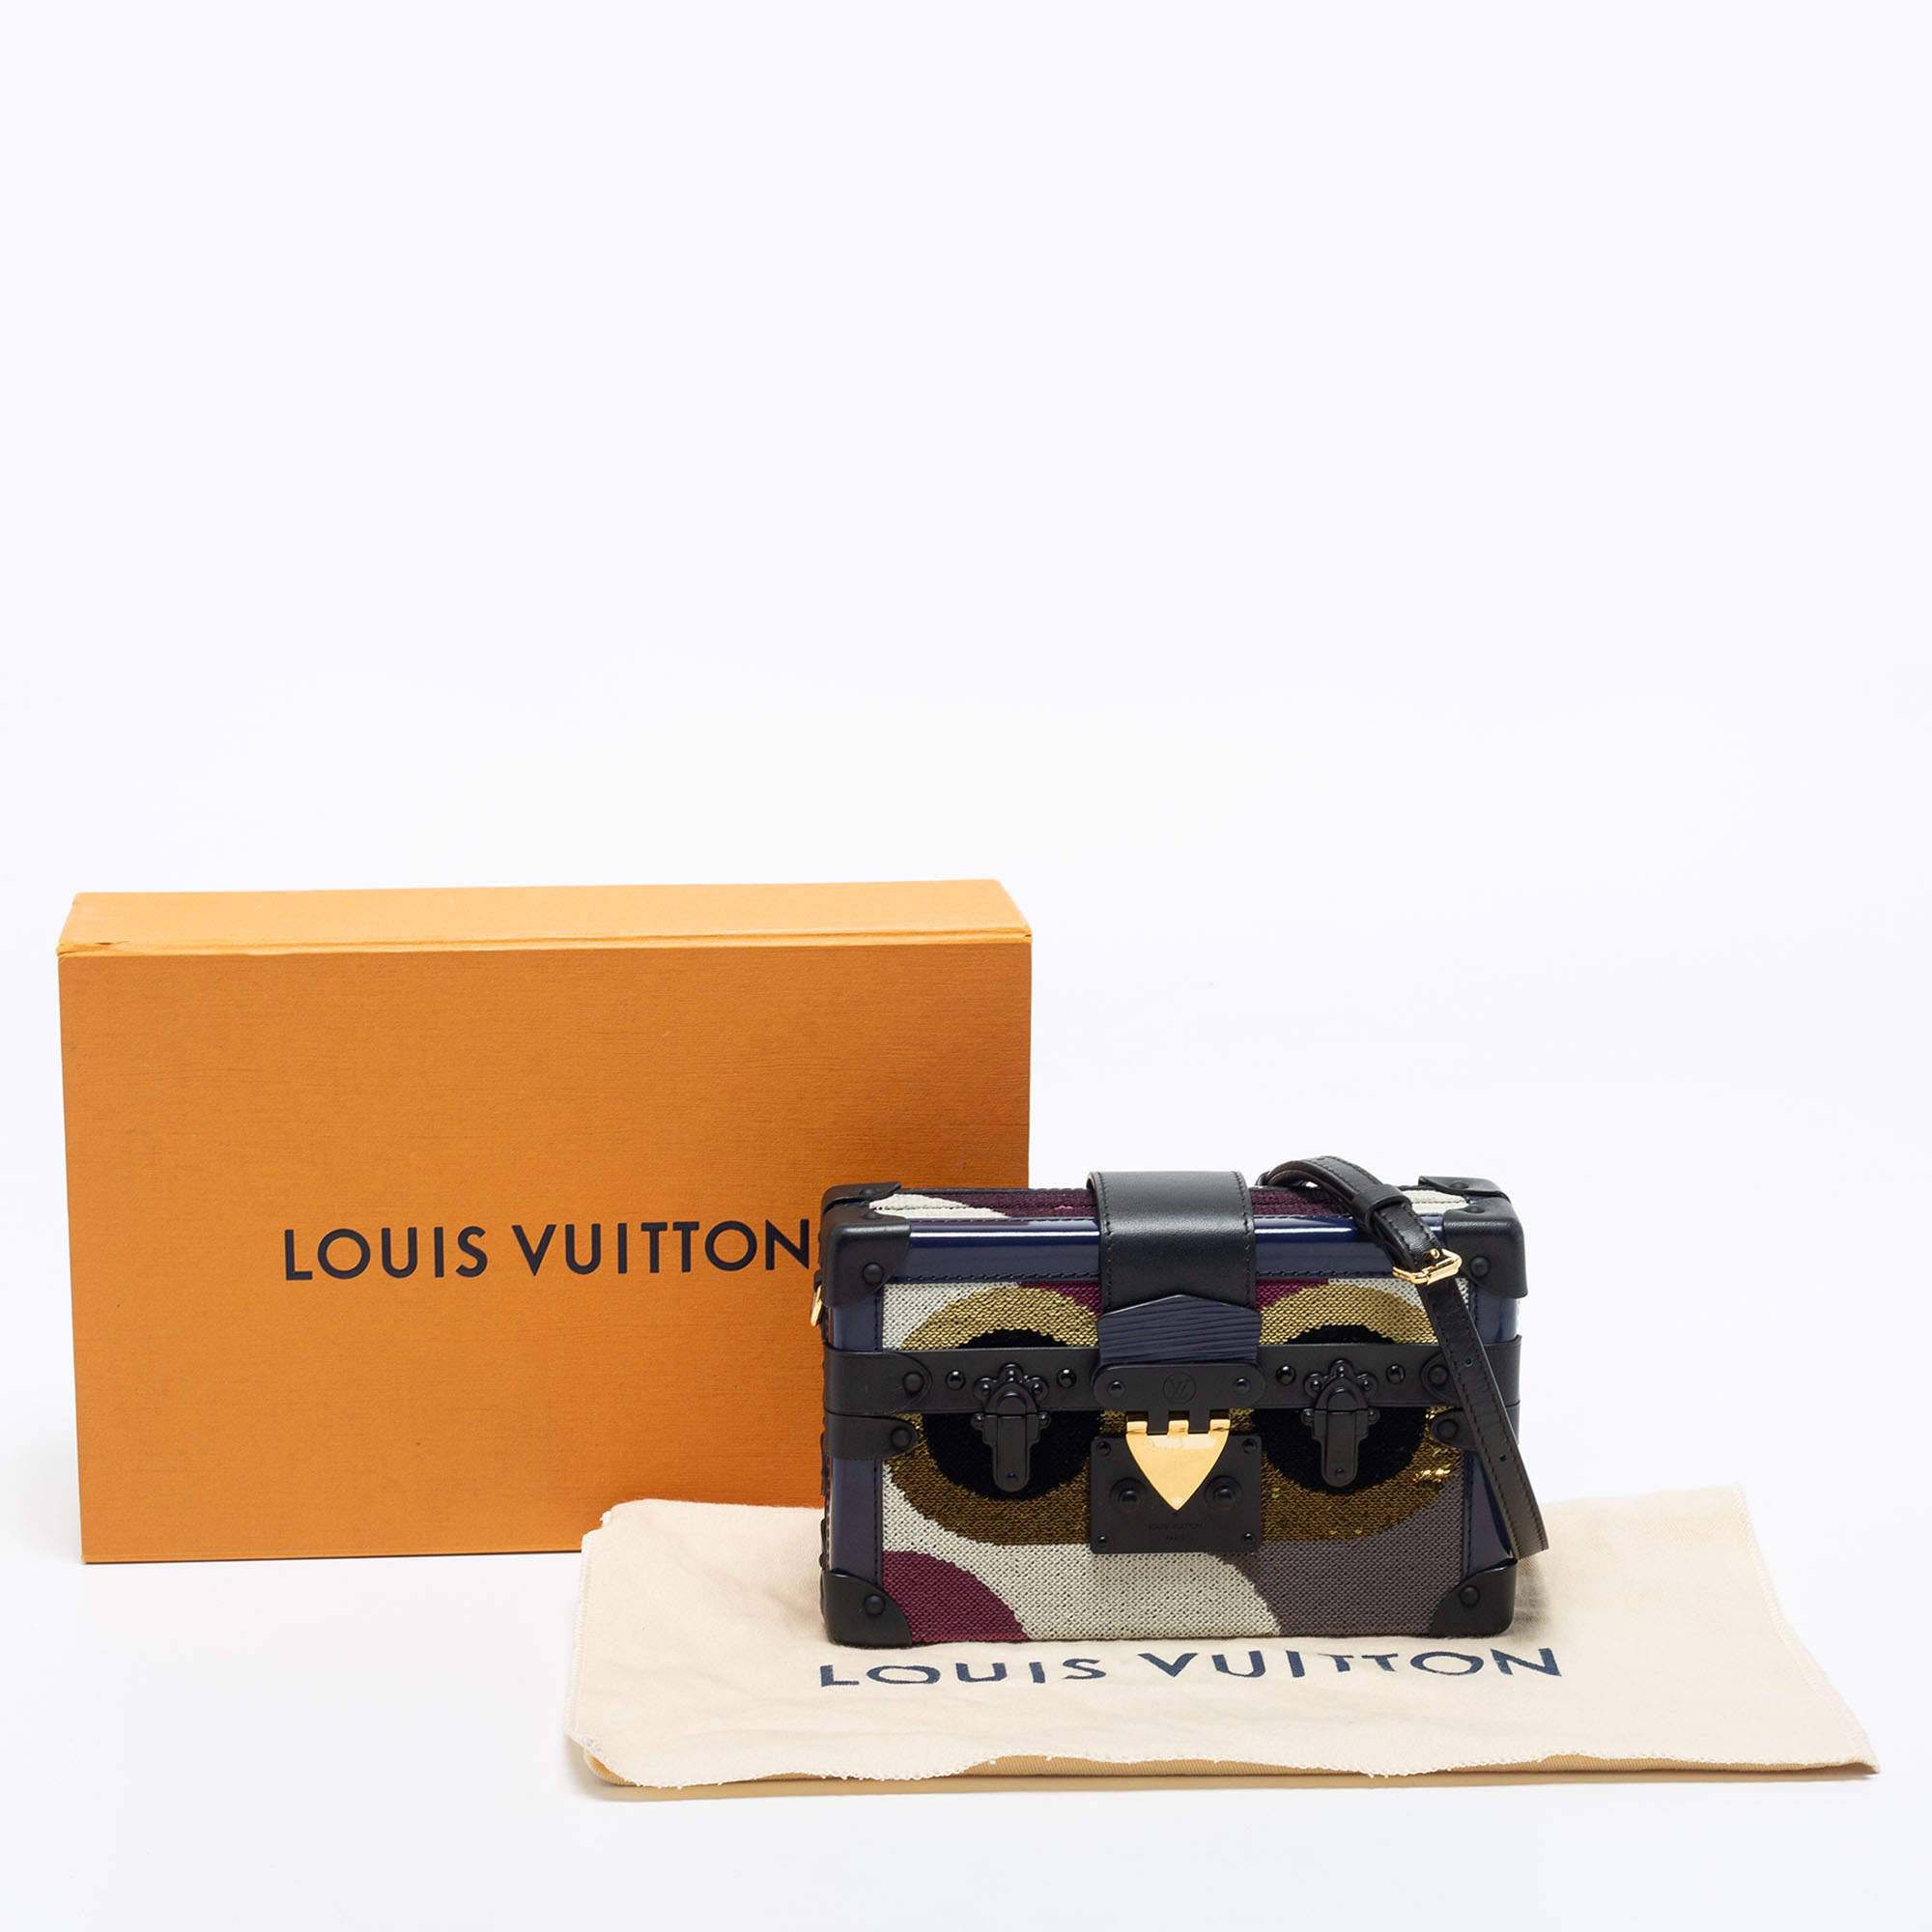 Louis Vuitton 2021 Sequins Petite Malle Bag w/ Tags - Black Evening Bags,  Handbags - LOU547456